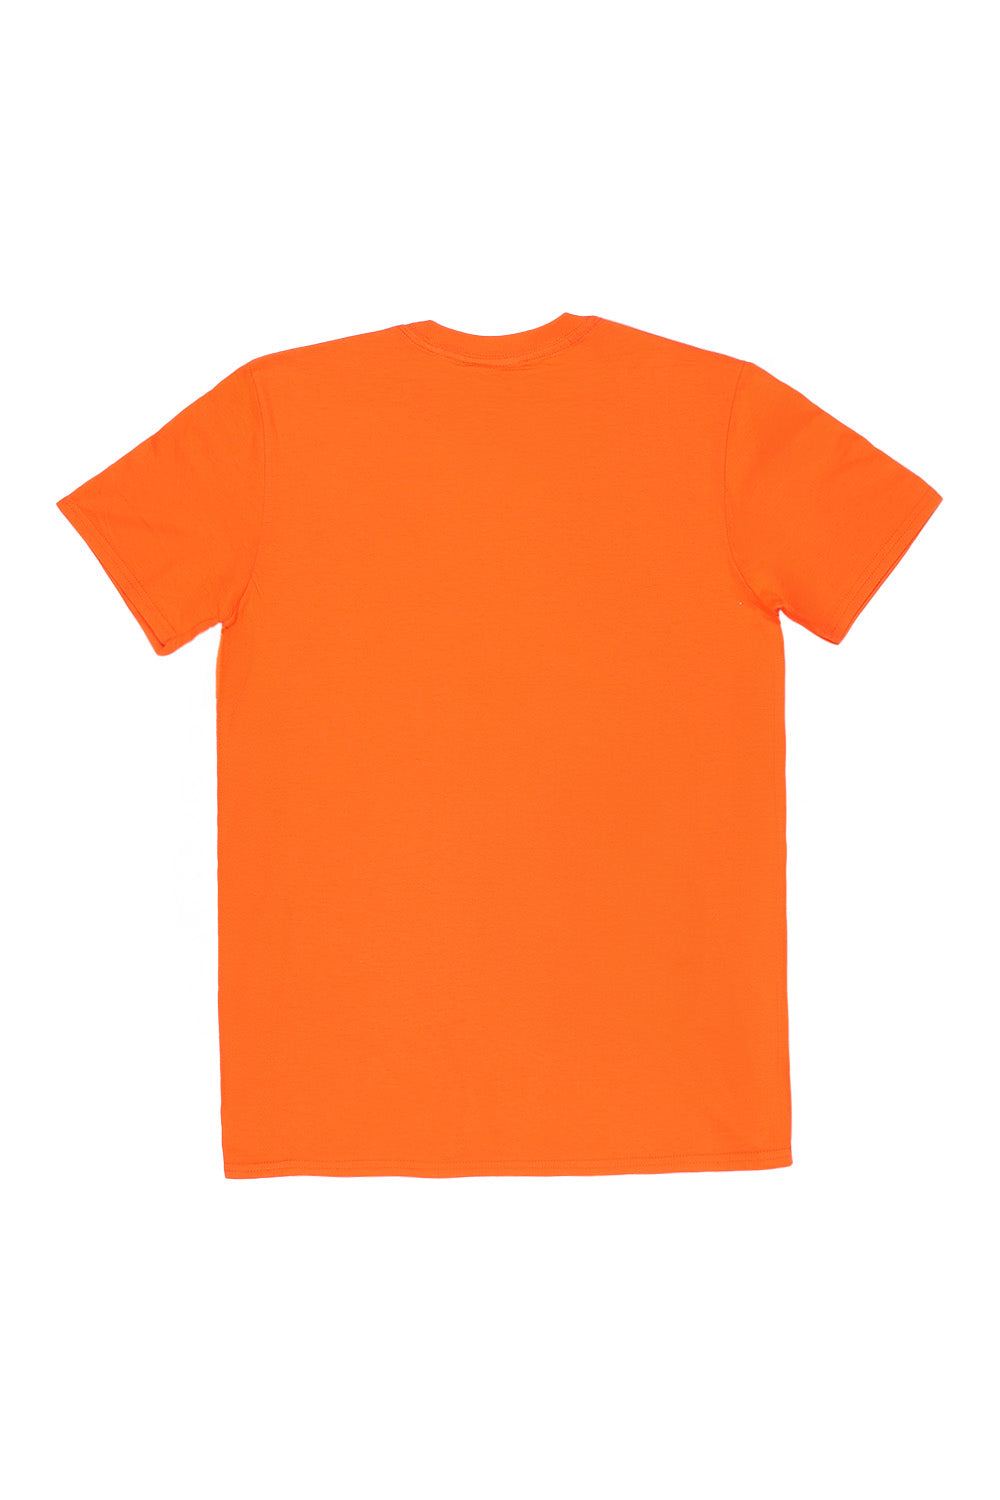 France T-Shirt in Orange (Custom Packs)